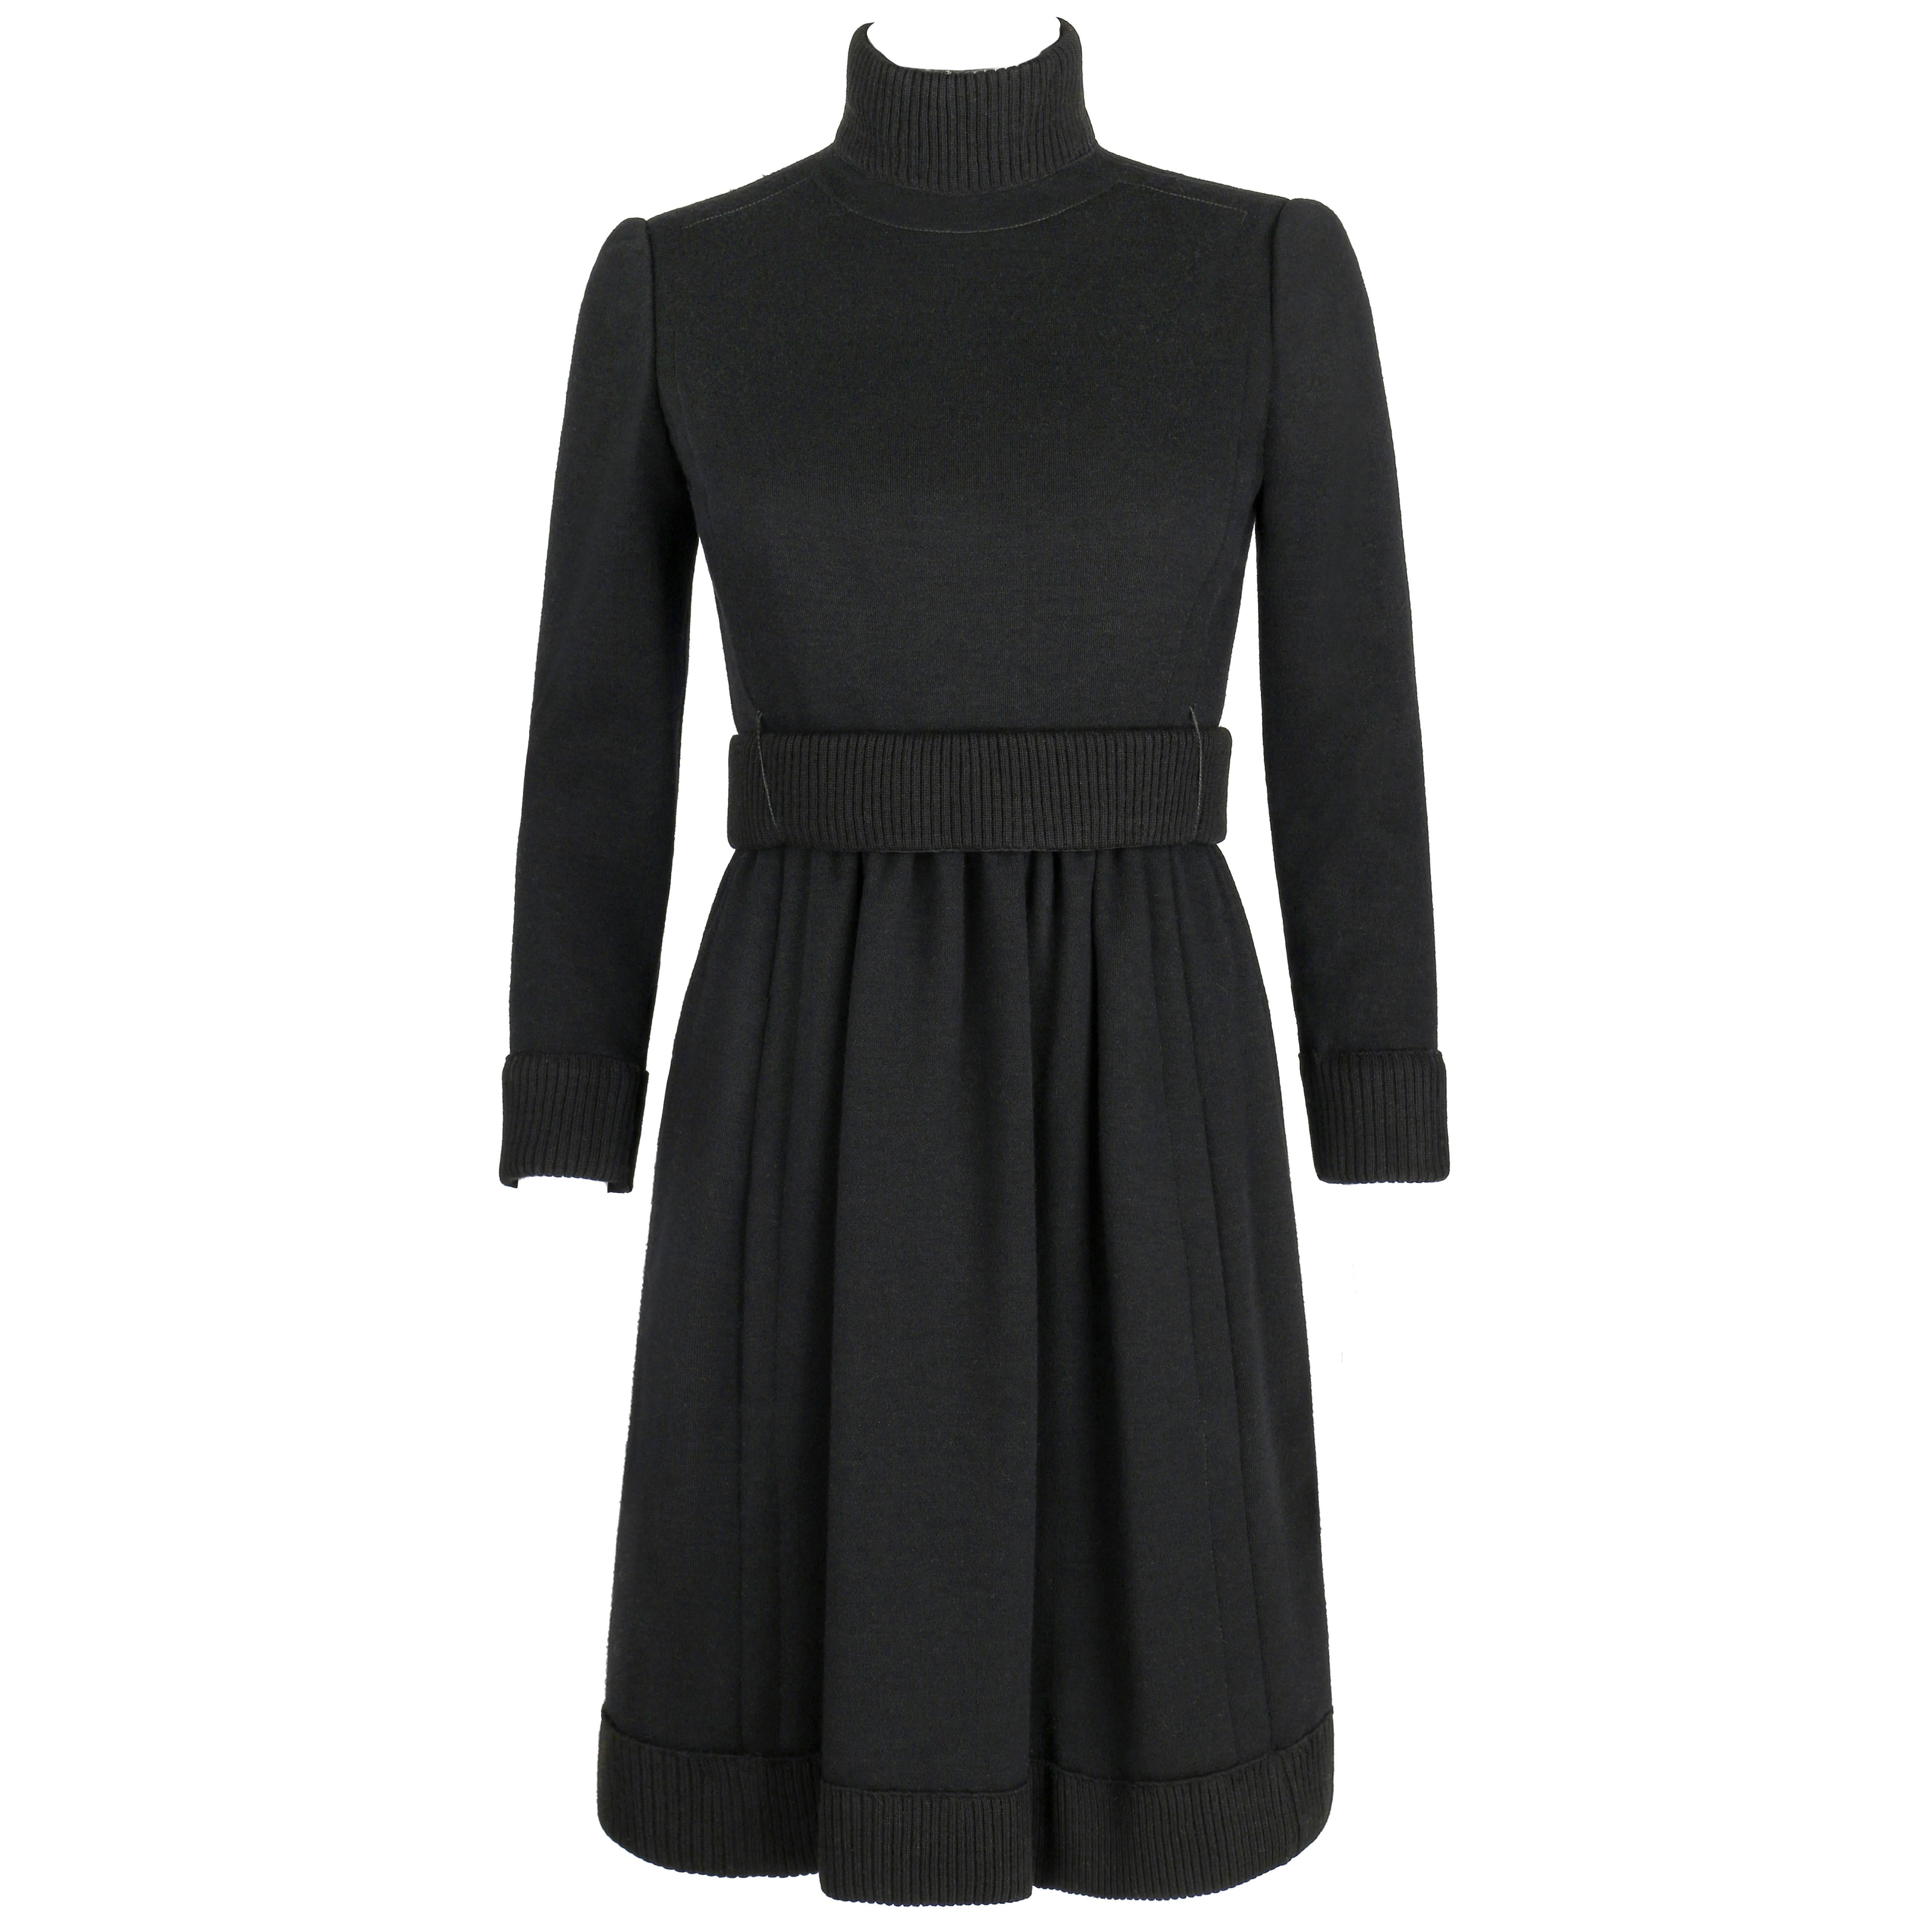 DONALD BROOKS c.1960's Black Mod Ribbed Mock Neck Button Up Belted Coat Dress